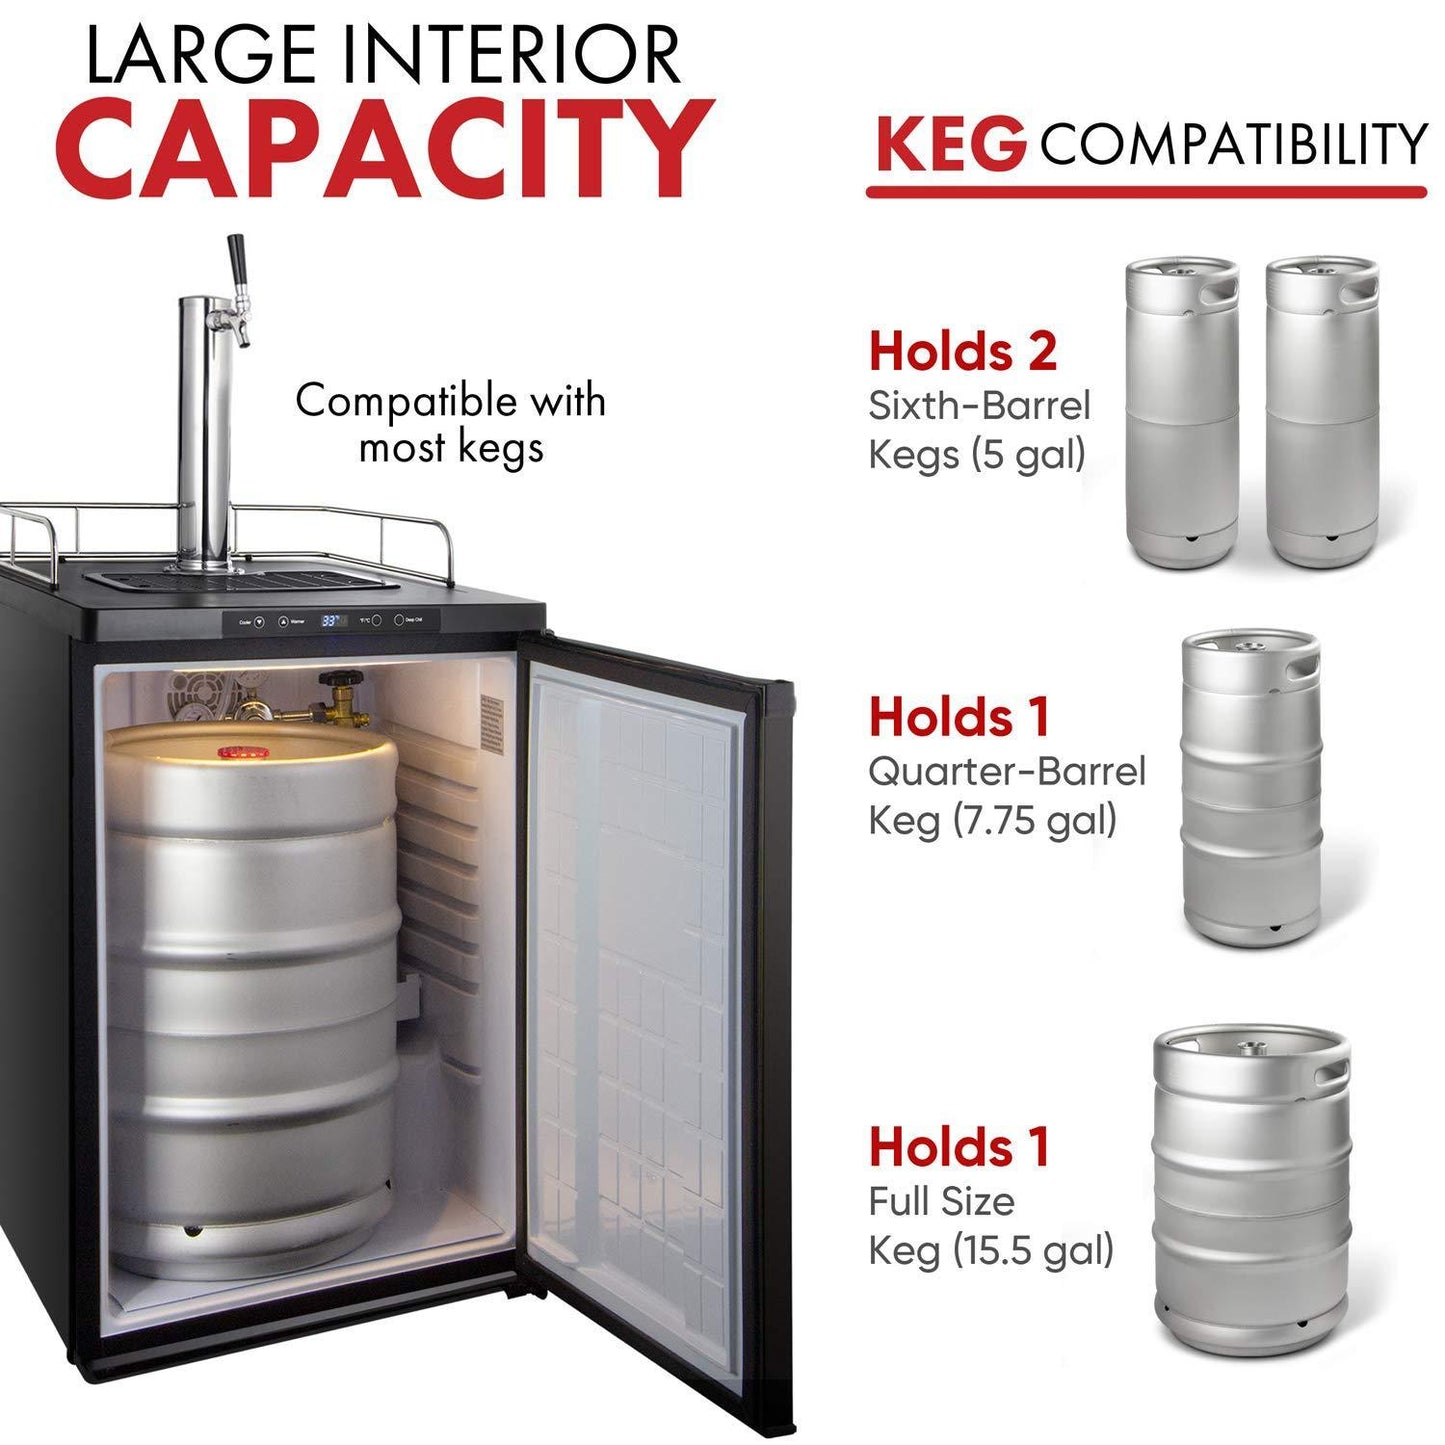 Kegco K309SS-1 Keg Dispenser, Stainless Steel - CookCave